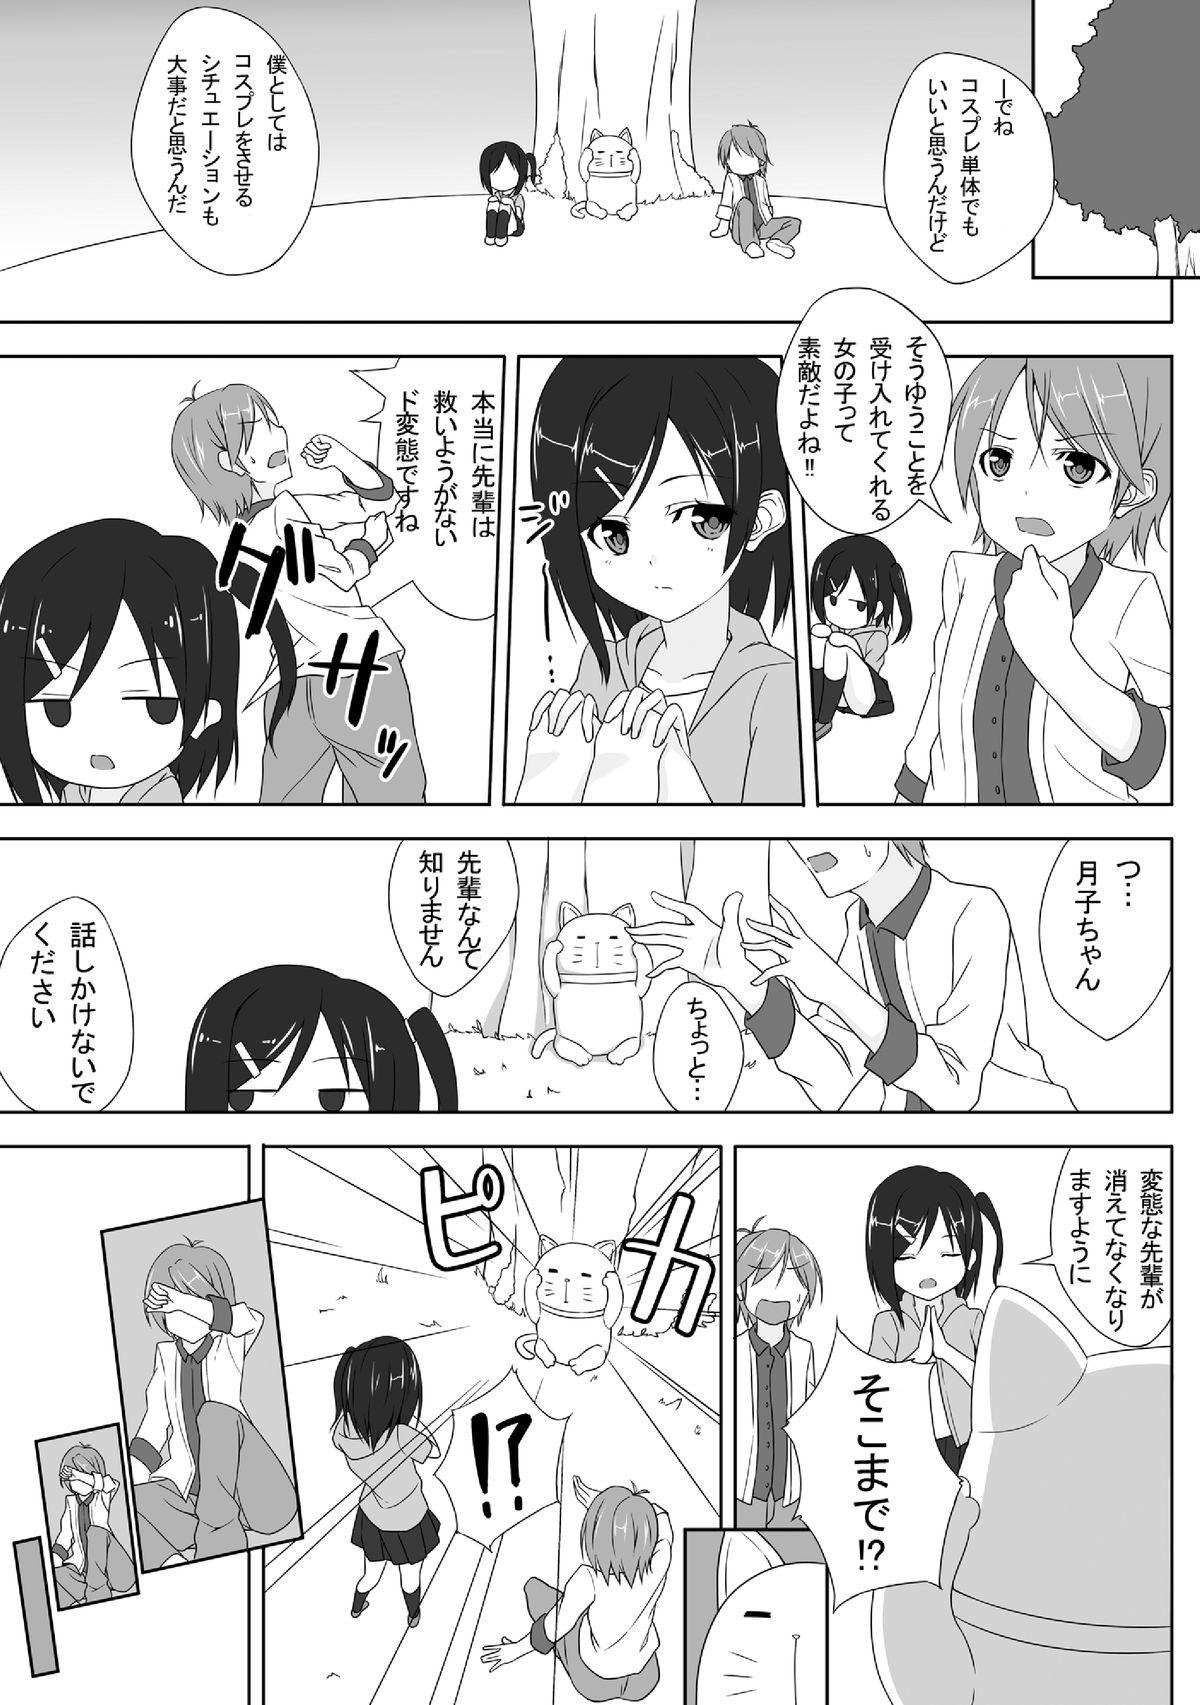 She Azuki Azusa no Hentai teki na Seikatsu. - Hentai ouji to warawanai neko Rubdown - Page 2